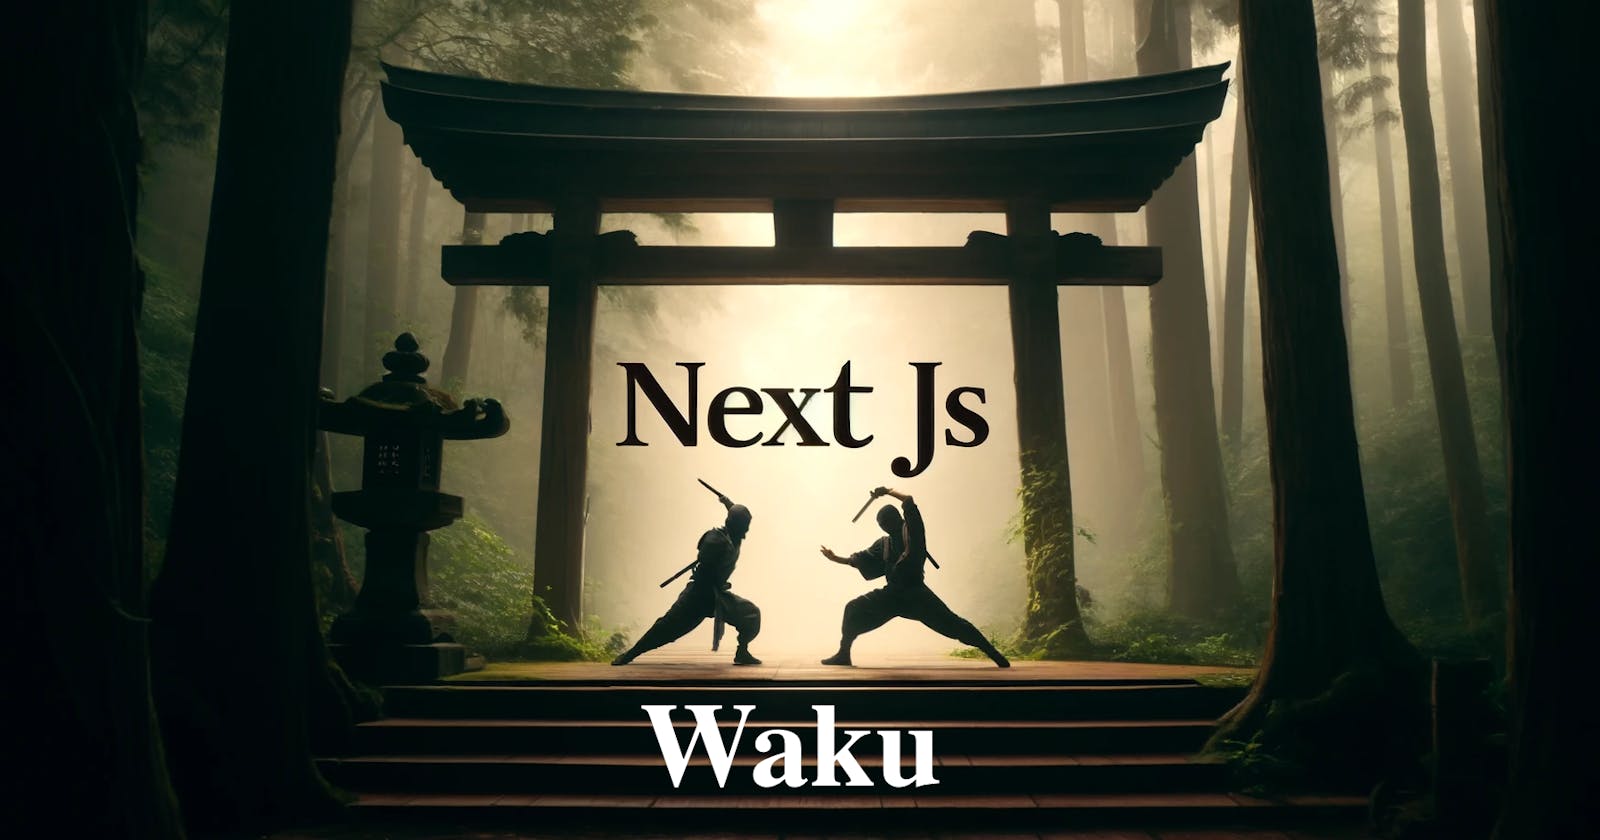 Is Waku a new NextJS?